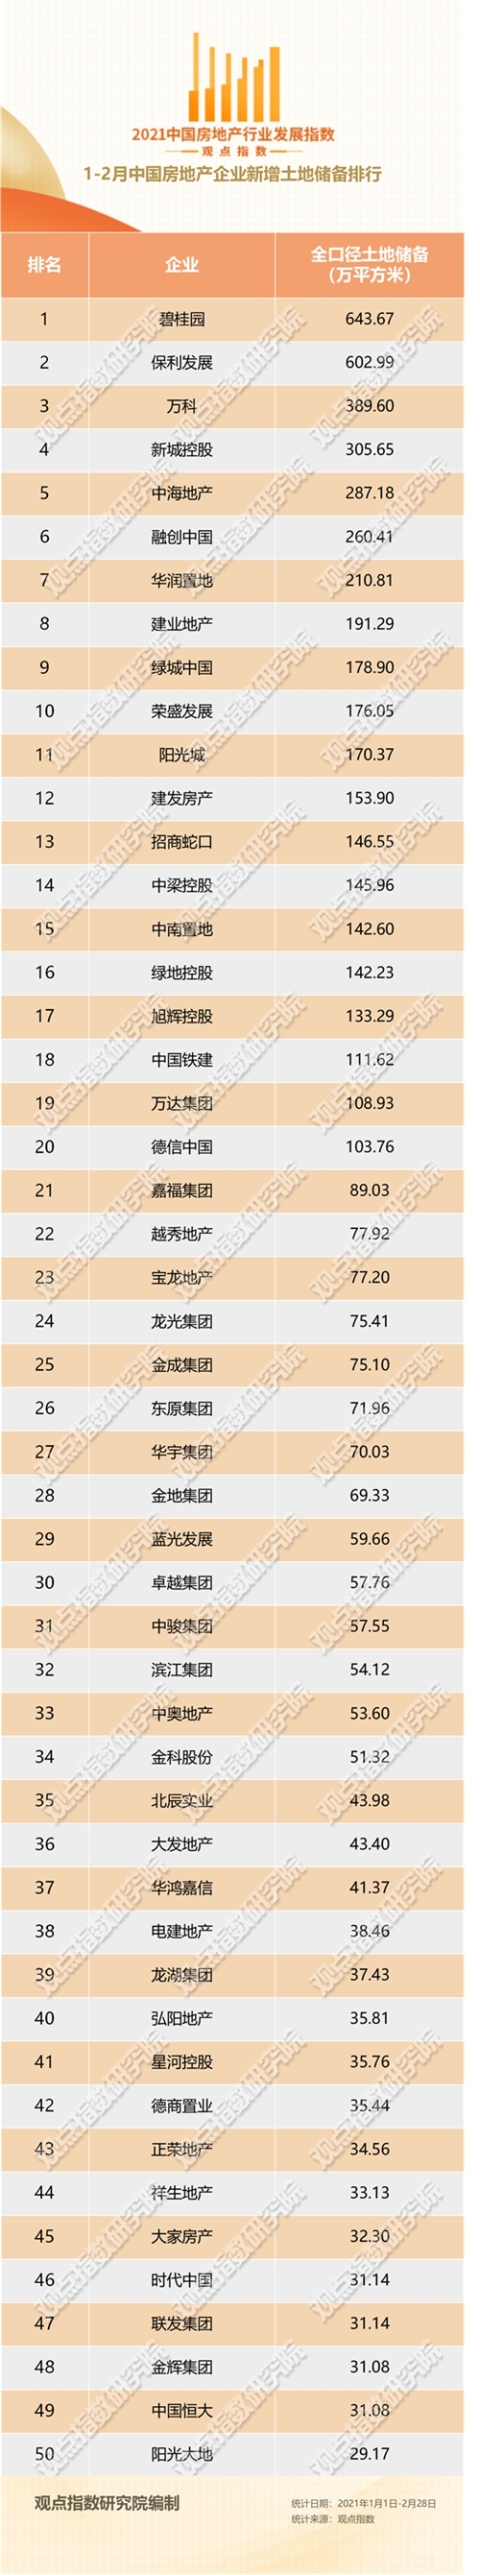 1-2月中国房企新增土地储备报告·观点月度指数